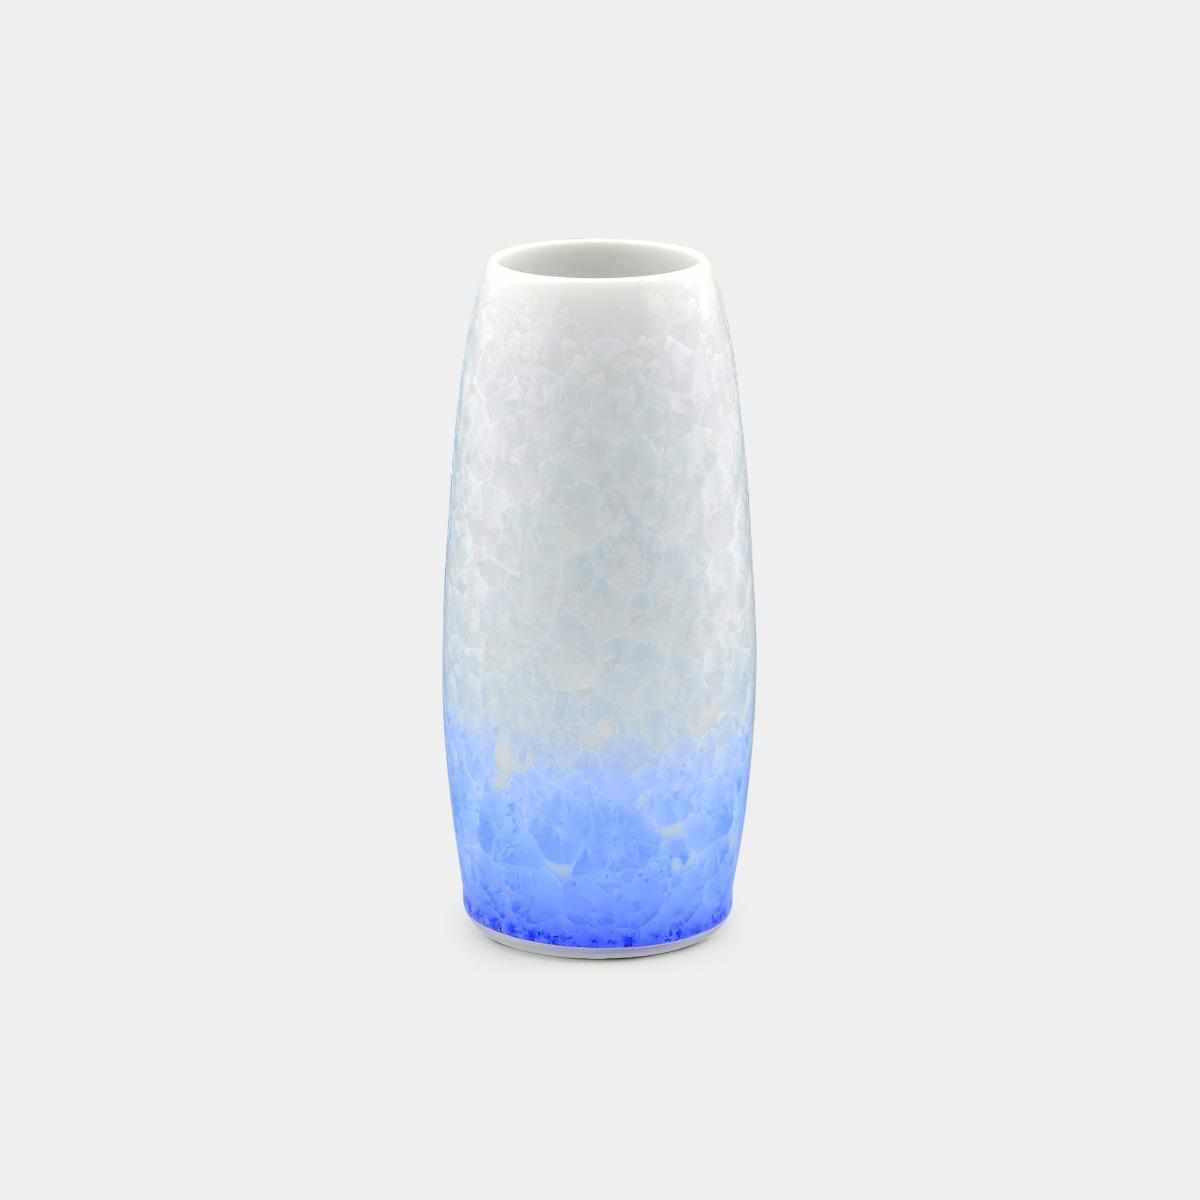 【花瓶】花結晶 (白地青) 花瓶 | 京焼-清水焼 | 